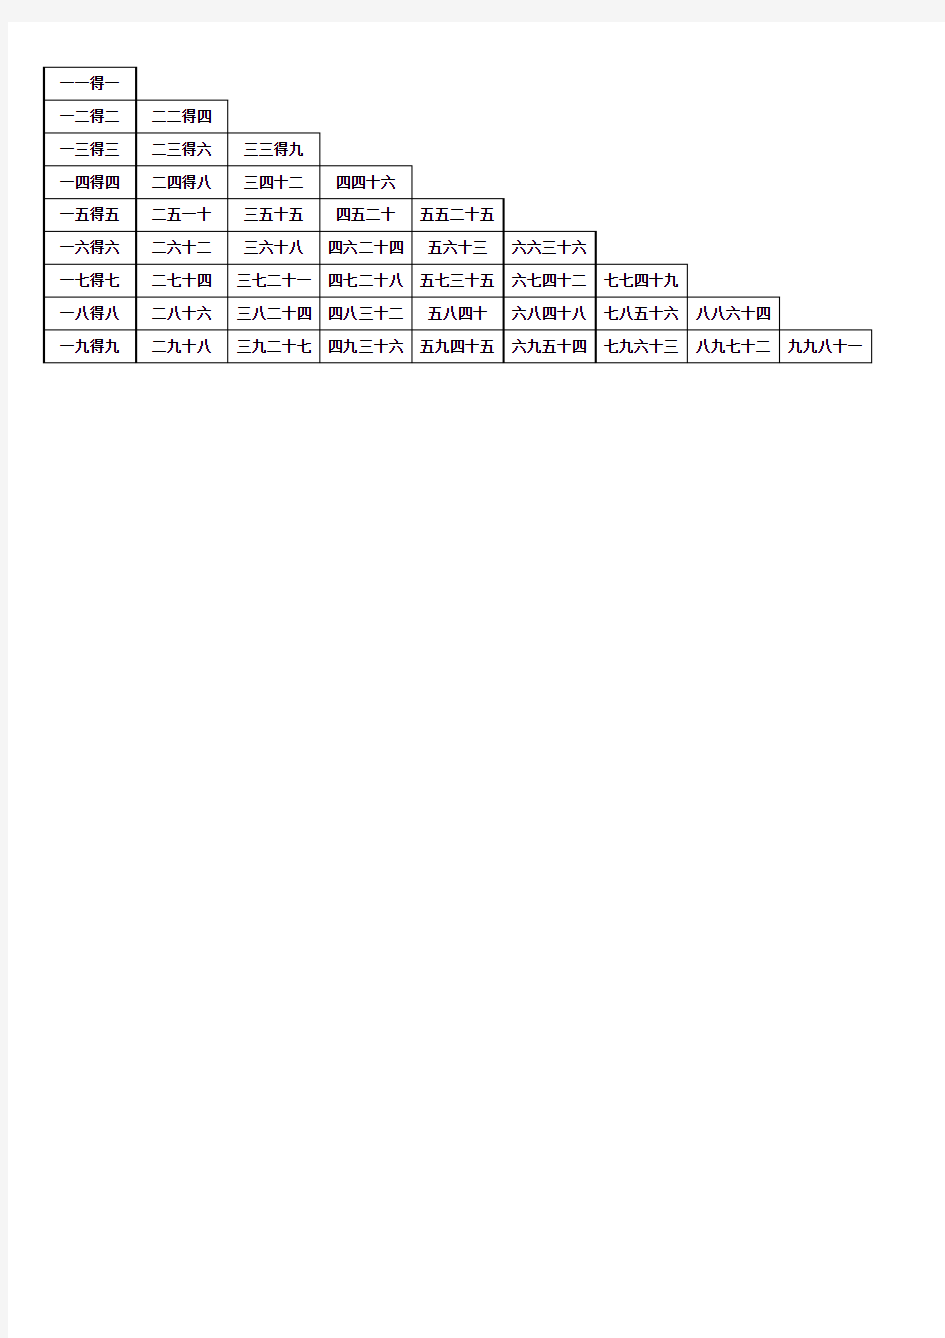 九九乘法口诀表(Excel打印版)